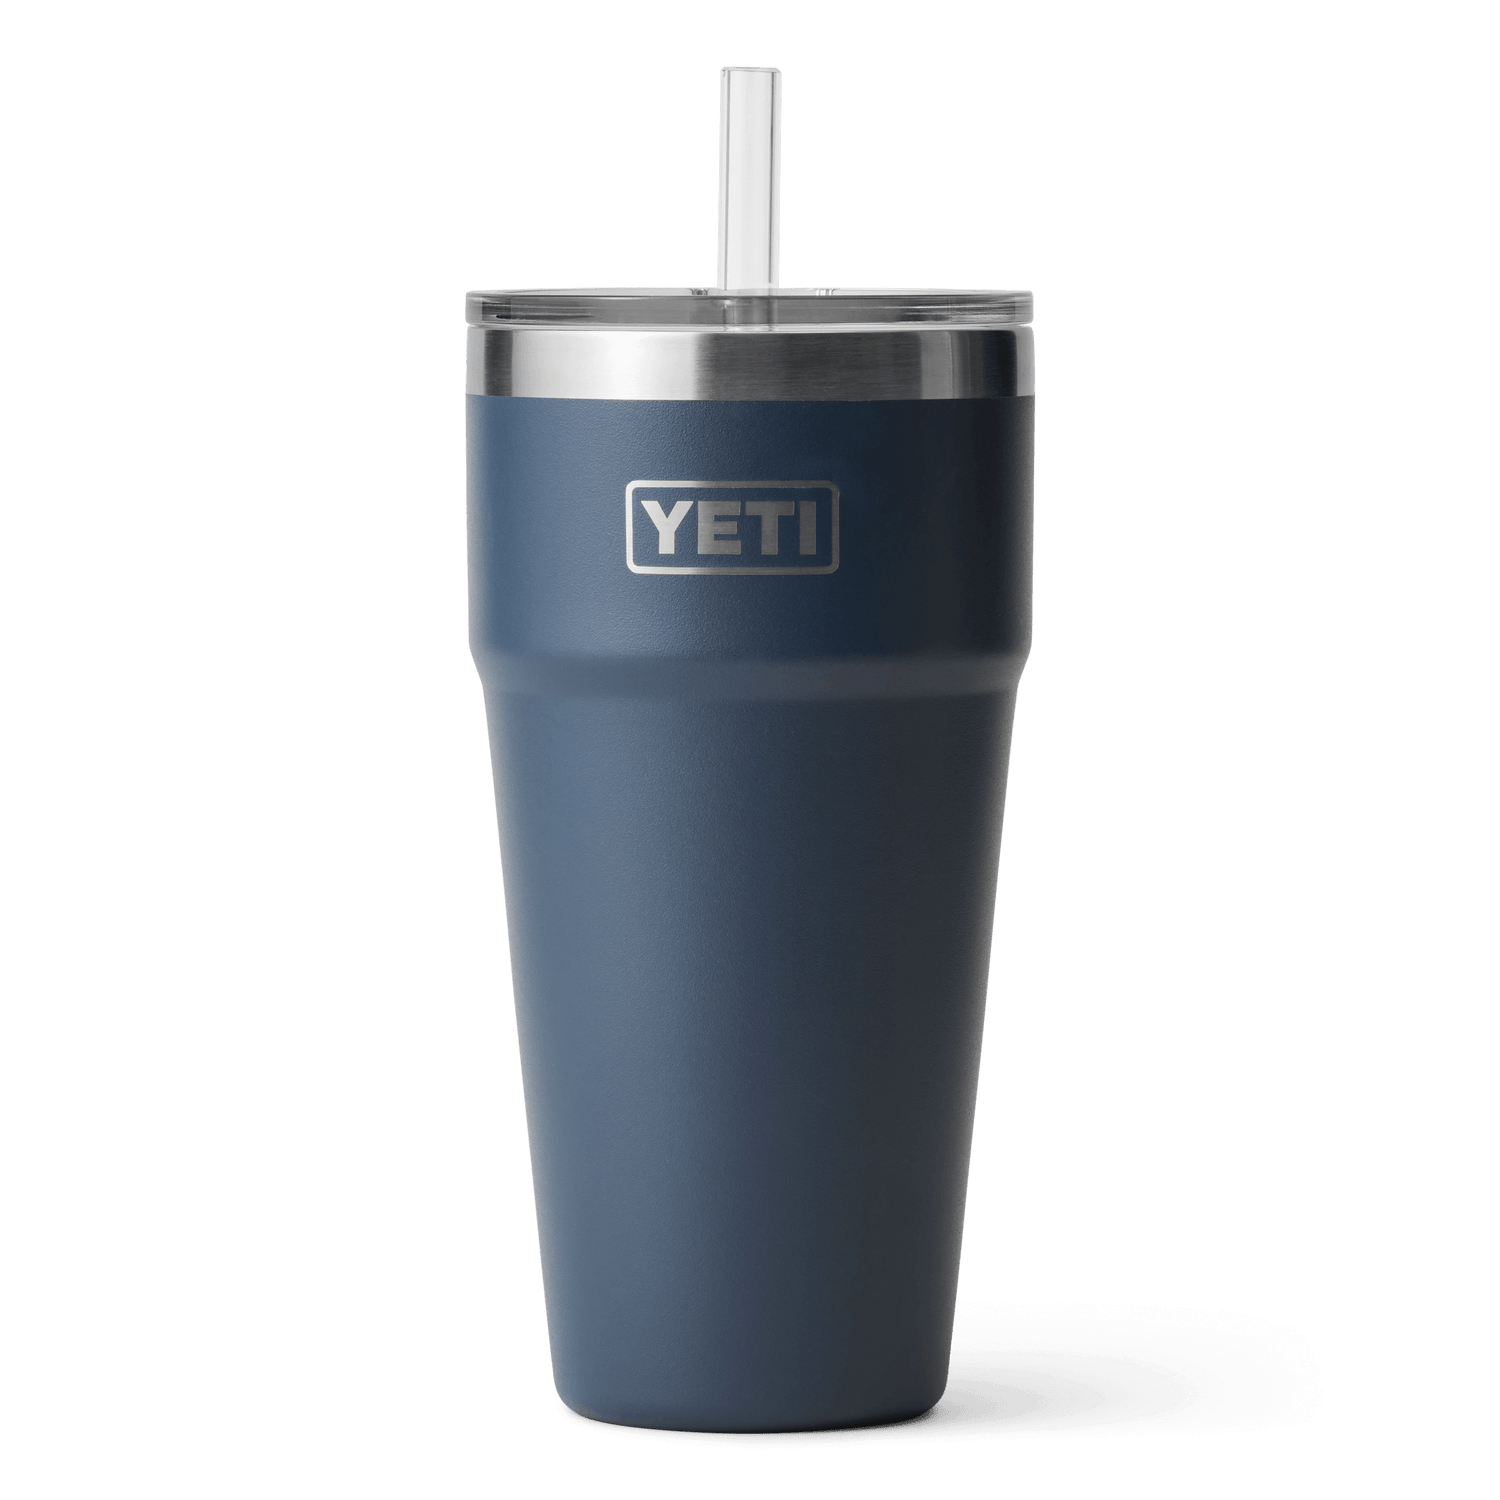 YETI® Tank 85 Insulated Ice Bucket – YETI EUROPE